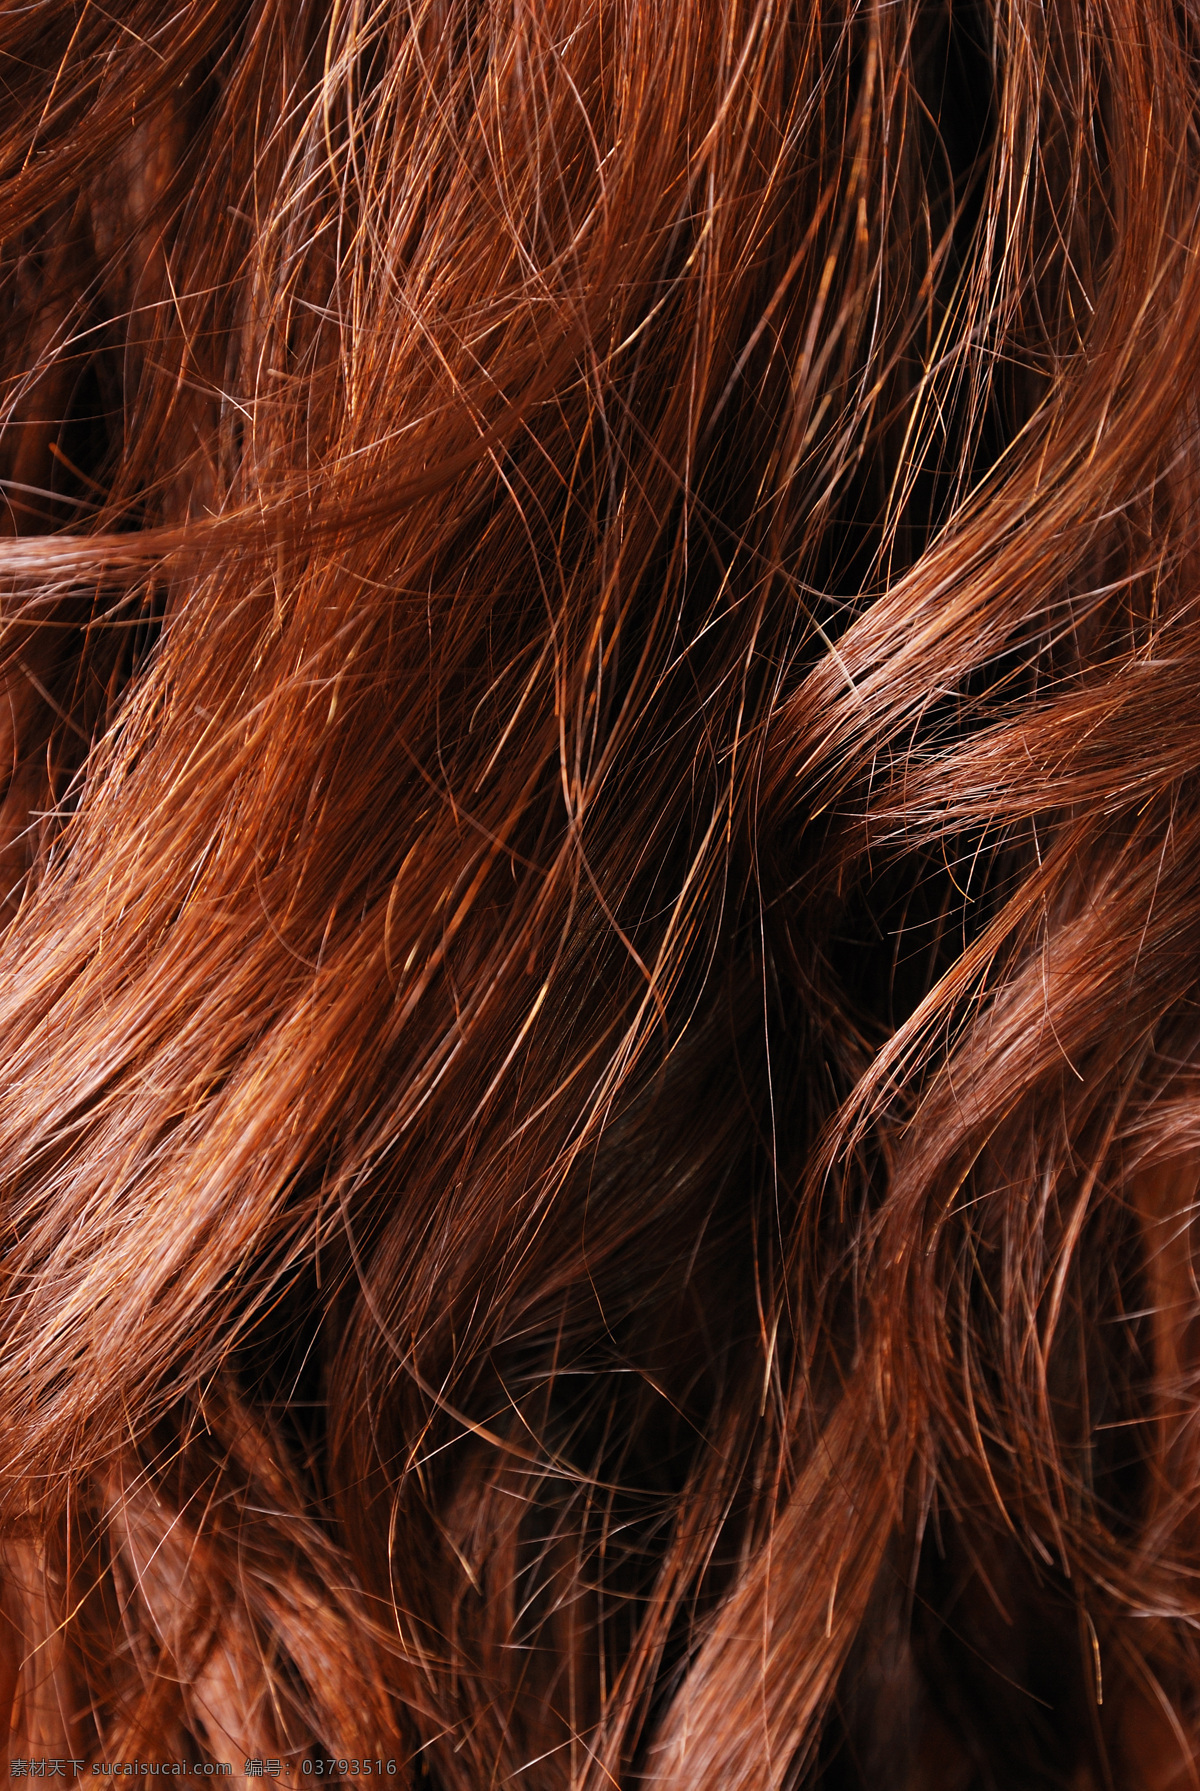 红色 头发 发丝 烫染 染发 秀发 红发 卷发 美发 发型 造型设计 摄影图 高清图片 人体器官图 人物图片